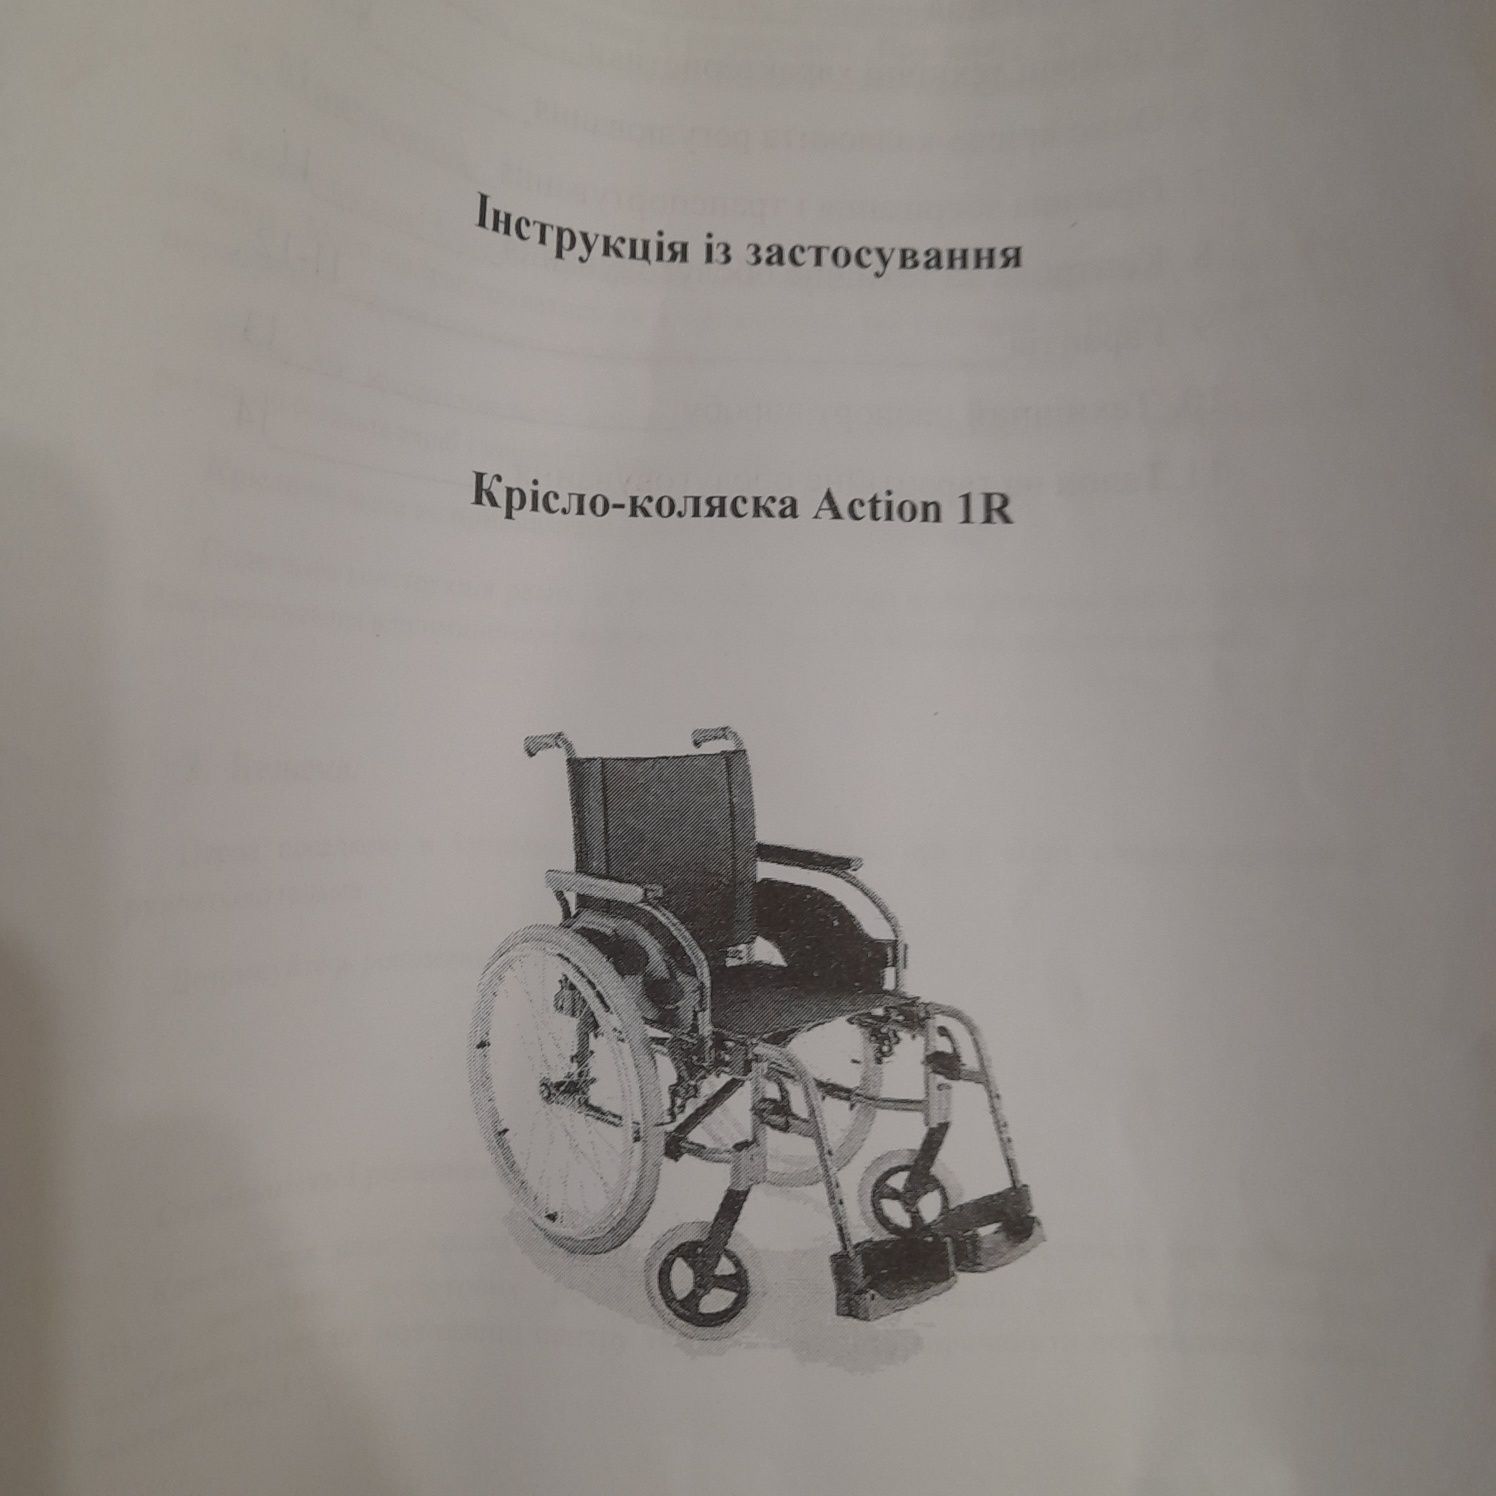 Кресло коляска Action 1Rдля людей с ограниченными возможностями